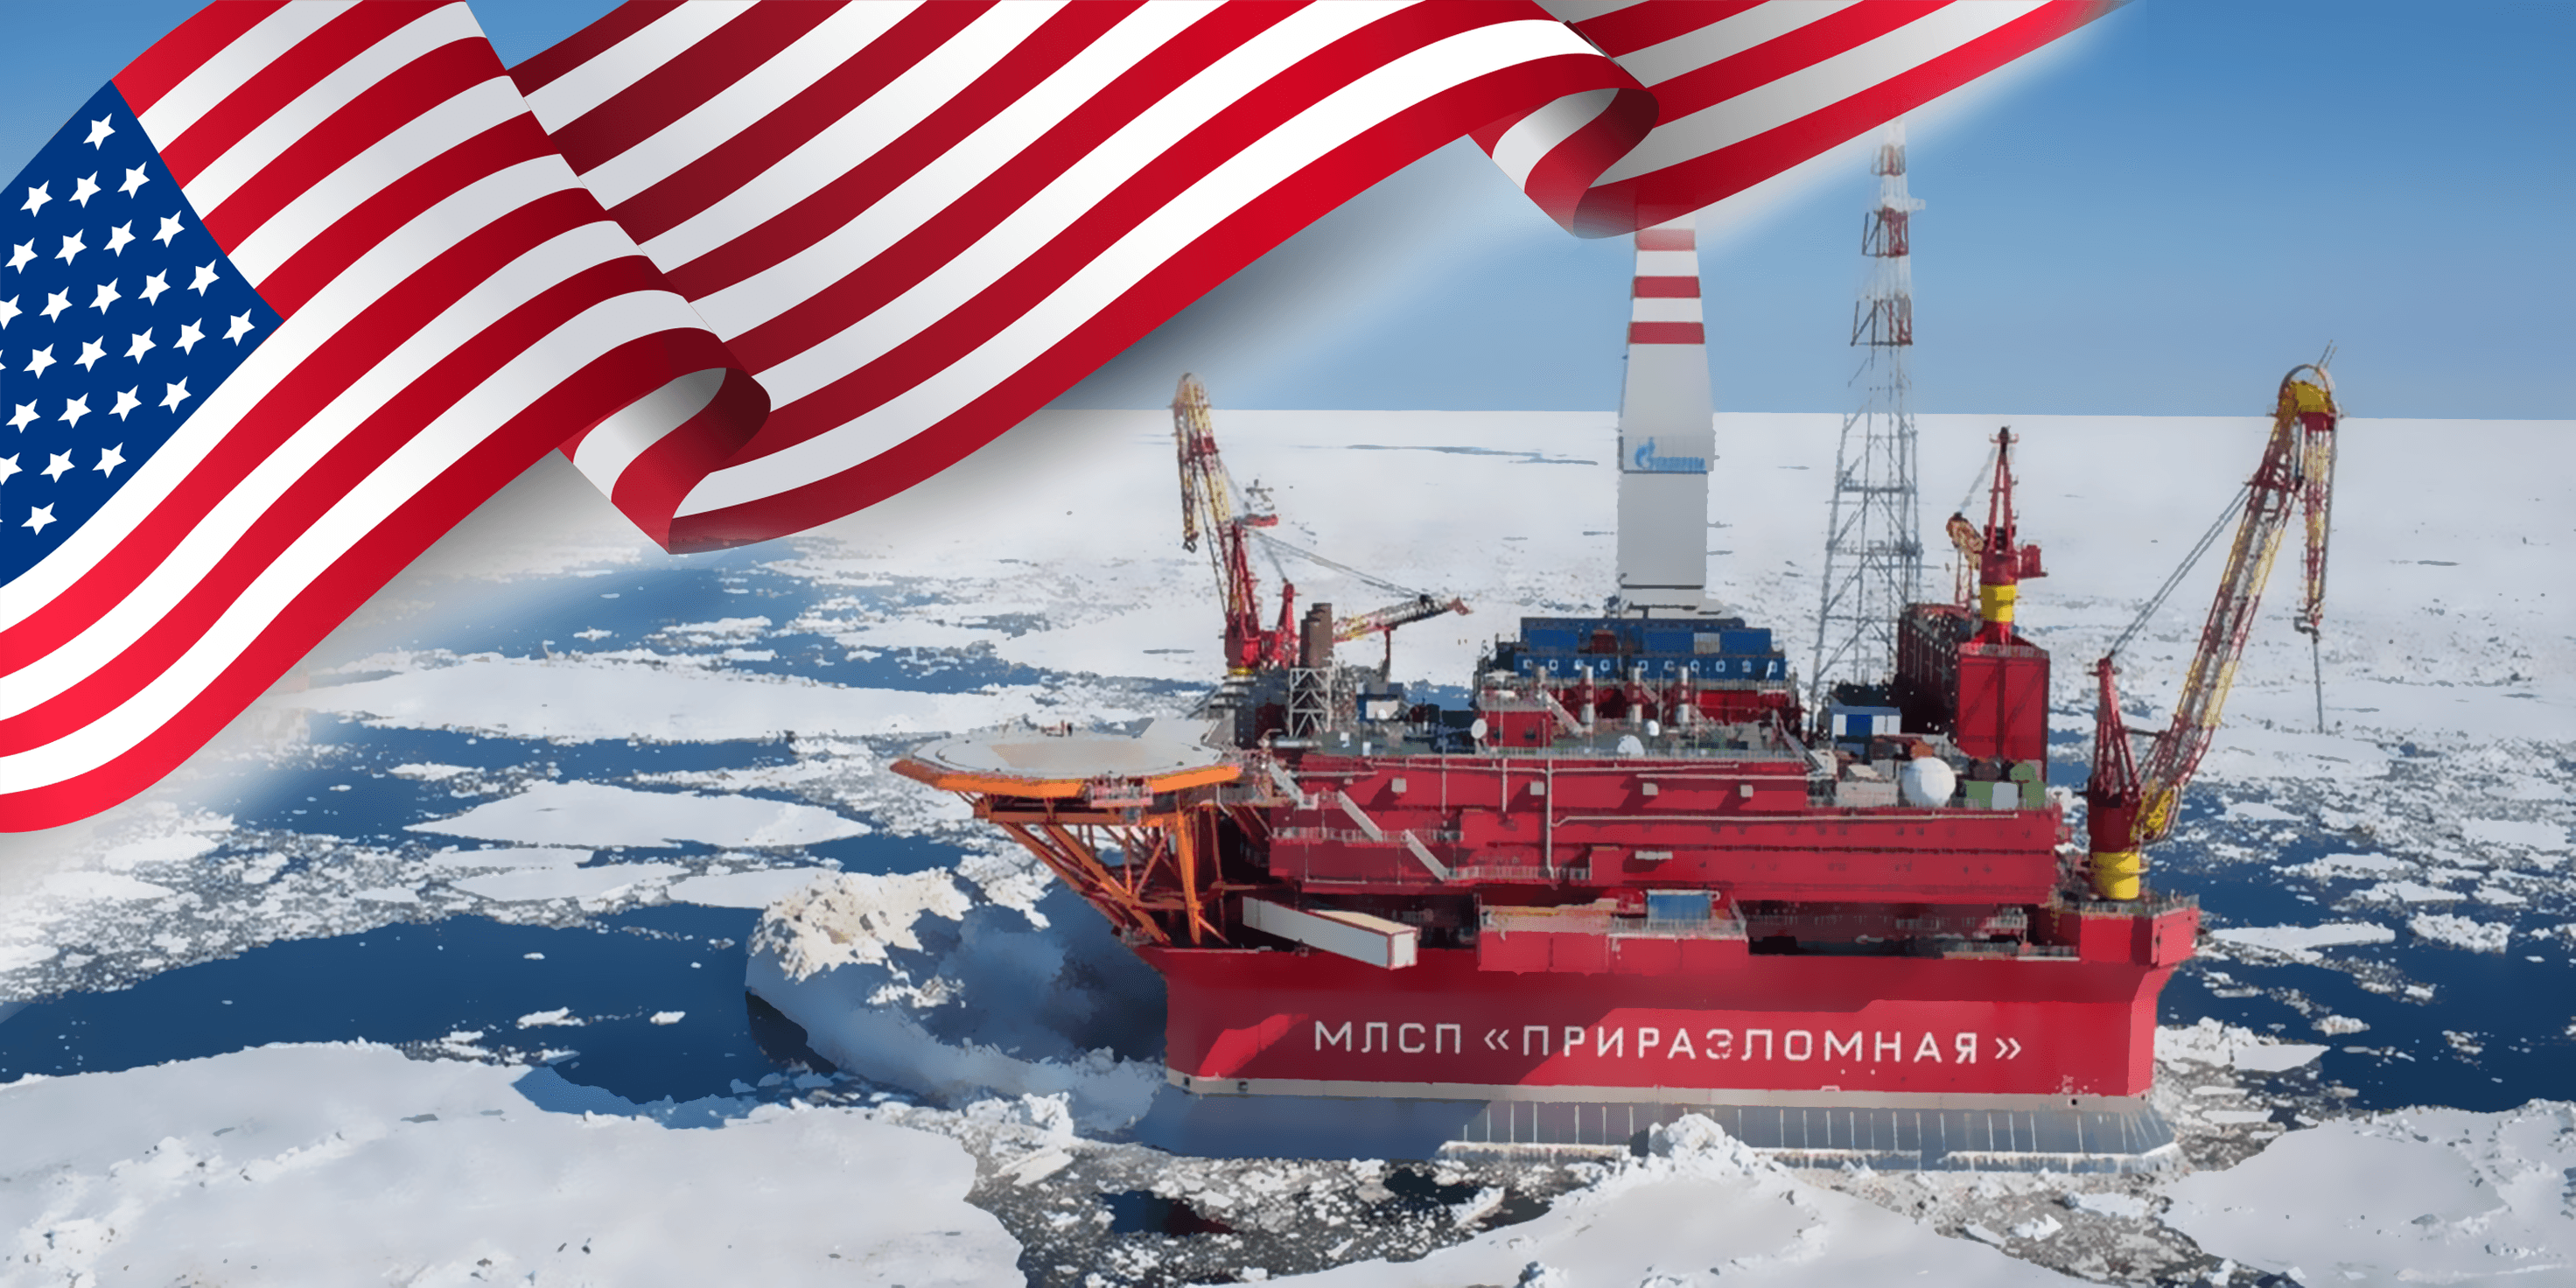 لماذا يتزايد الاهتمام الأمريكي بمنطقة القطب الشمالي؟